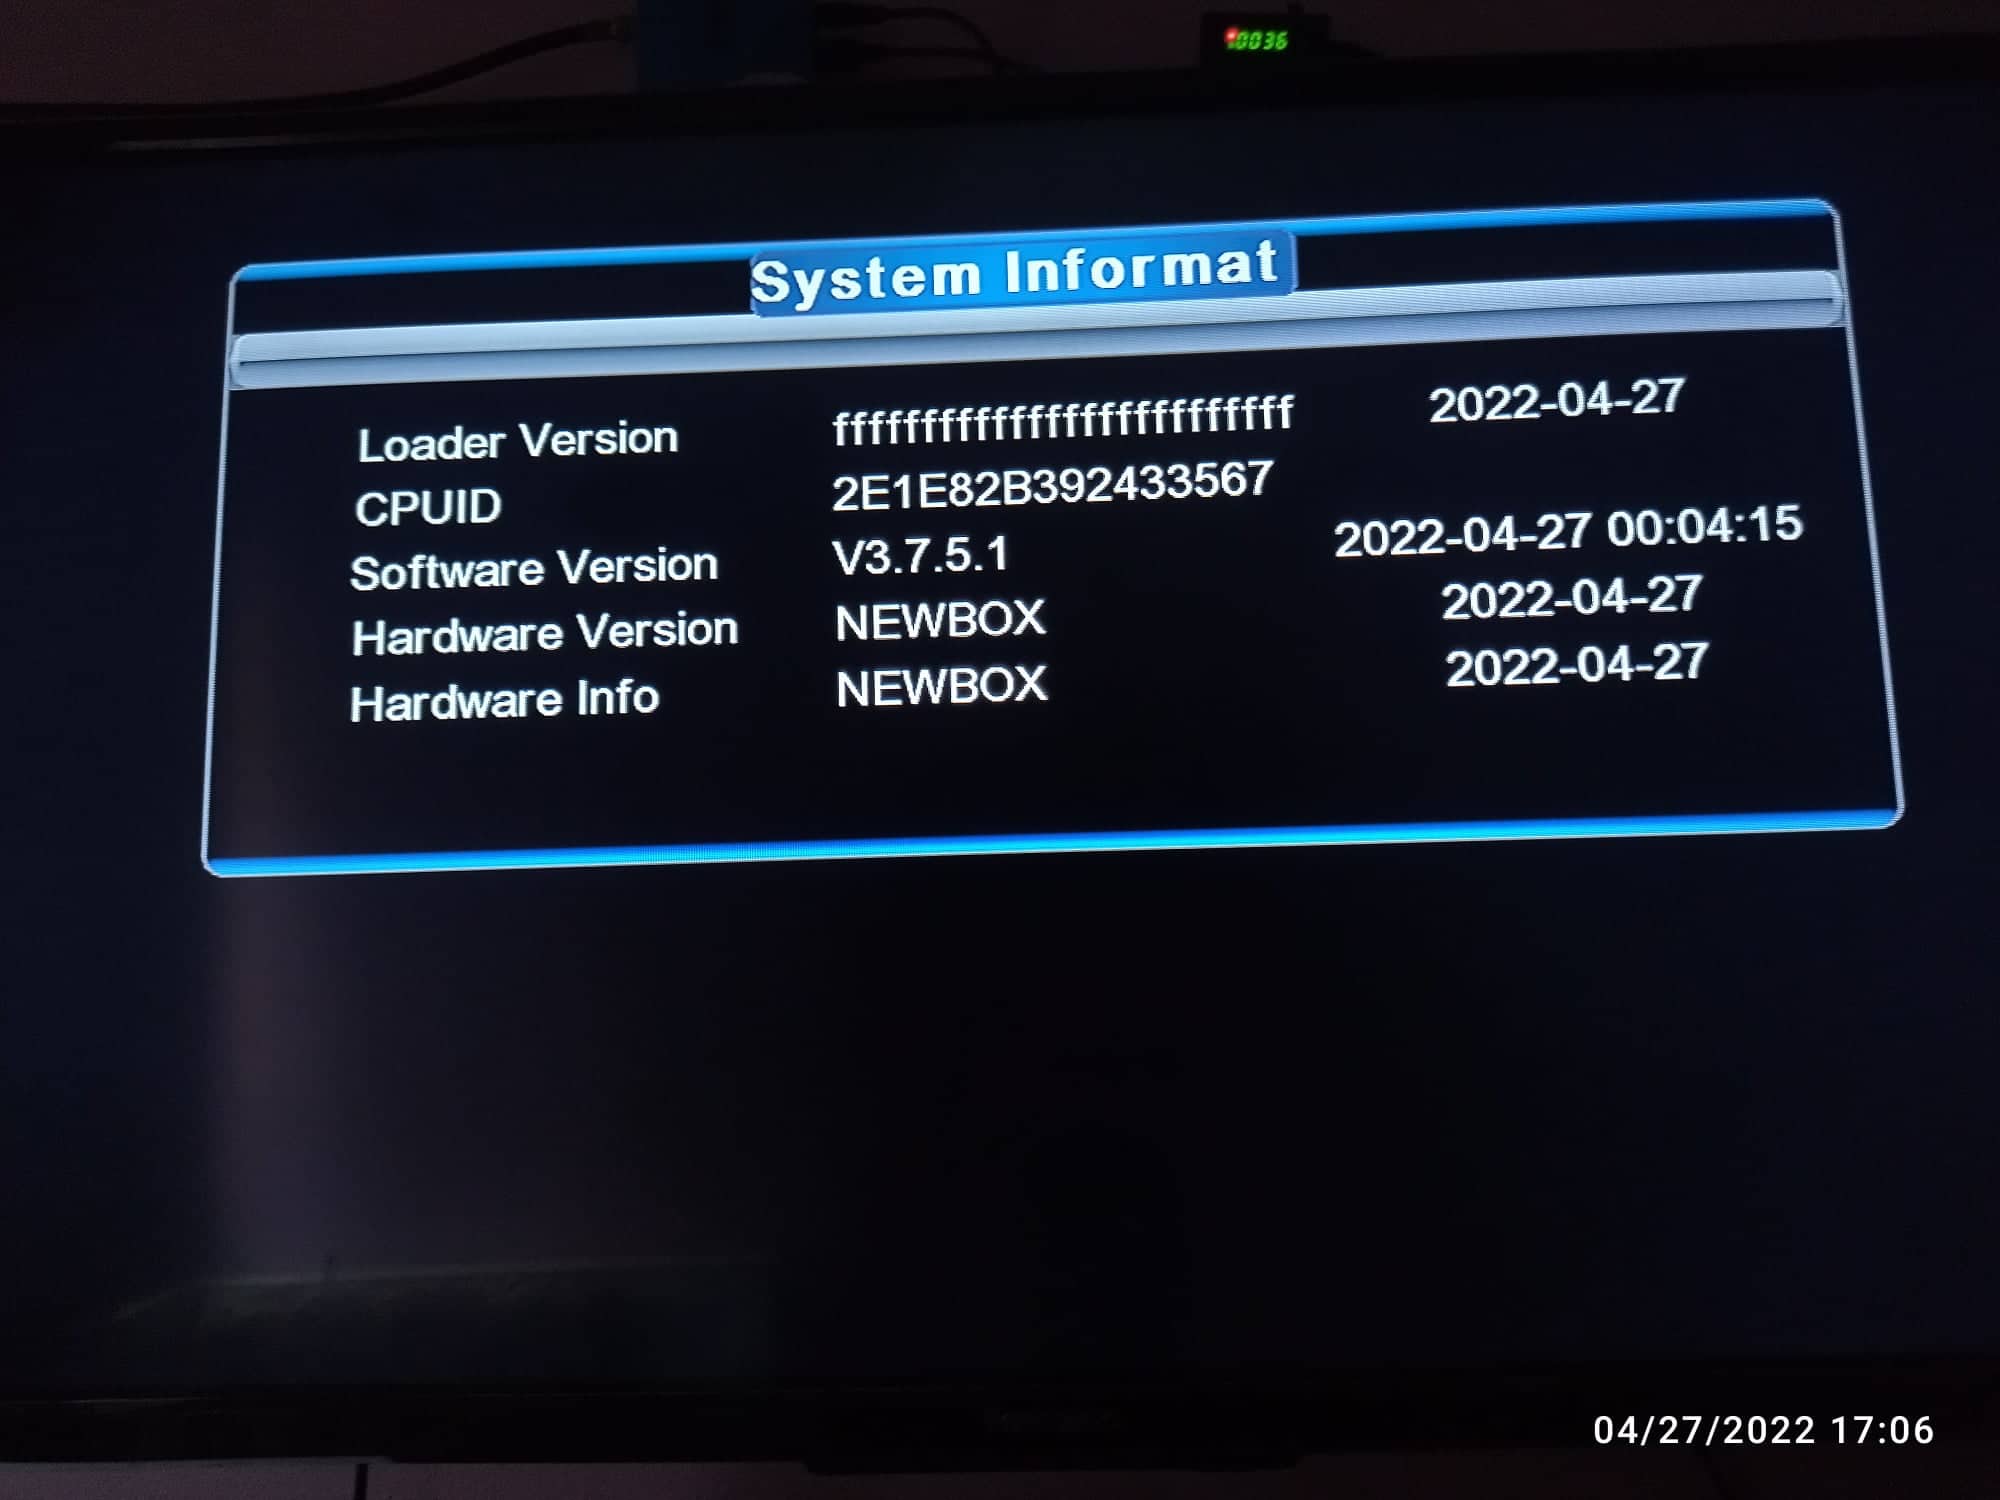 تحويل أجهزة الاسترا G1 الي NEW BOX ED777 يوتيوب و IPTV وسهولة إضافة BISS سوفت جديد تاريخ 24-4-2022 P_2308rf0st1